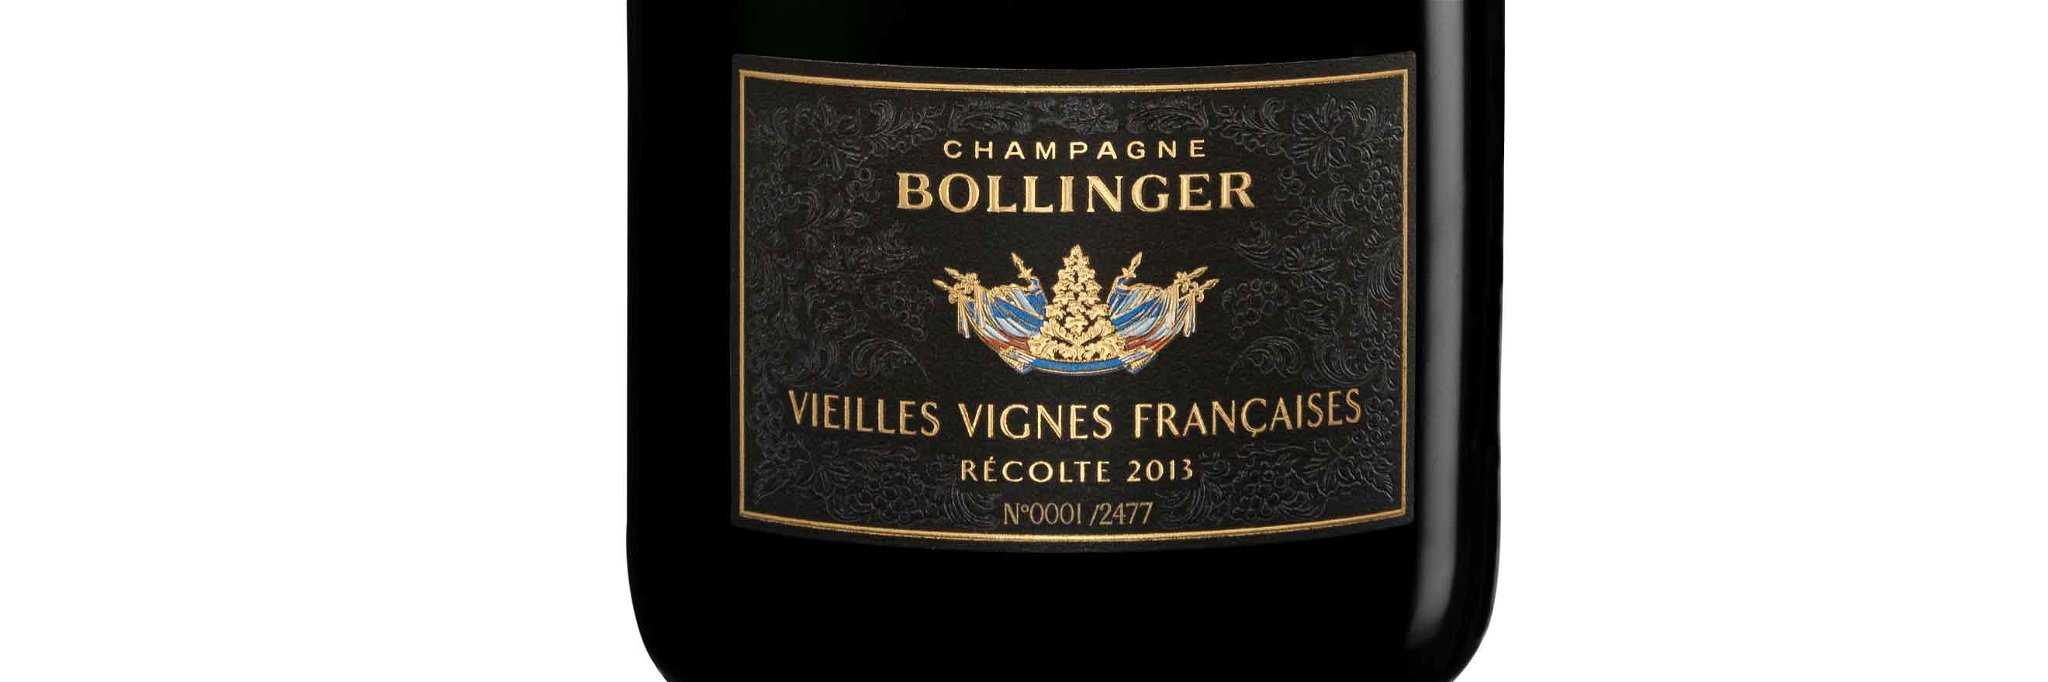 Champagne Bollinger Vieilles Vignes Françaises &nbsp;2013